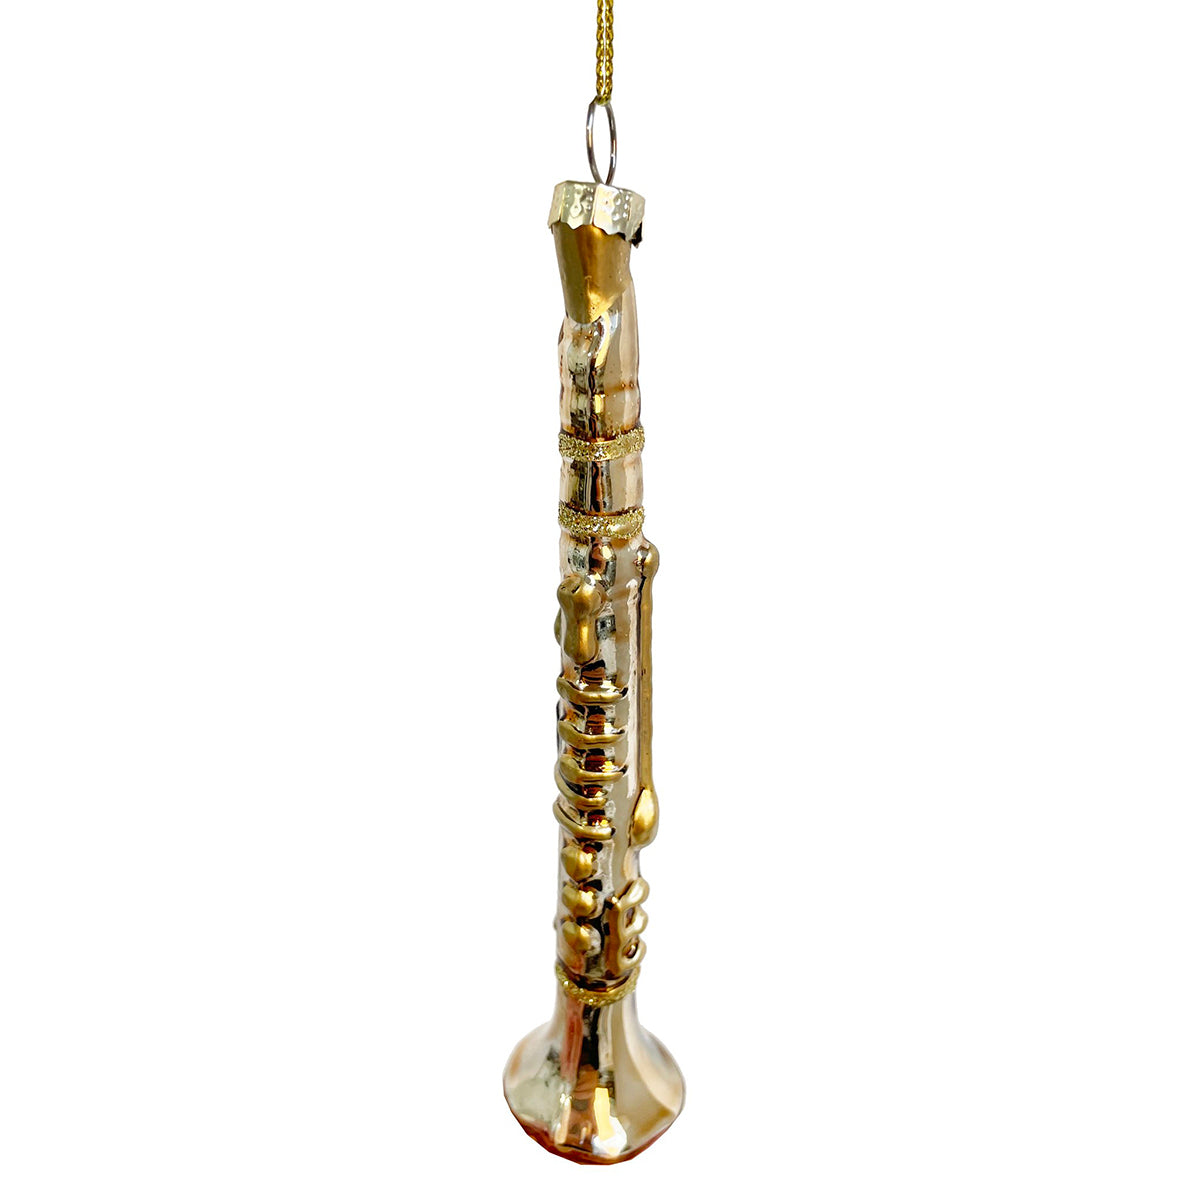 ShiShi Glass Clarinet Shiny Gold 14Cm